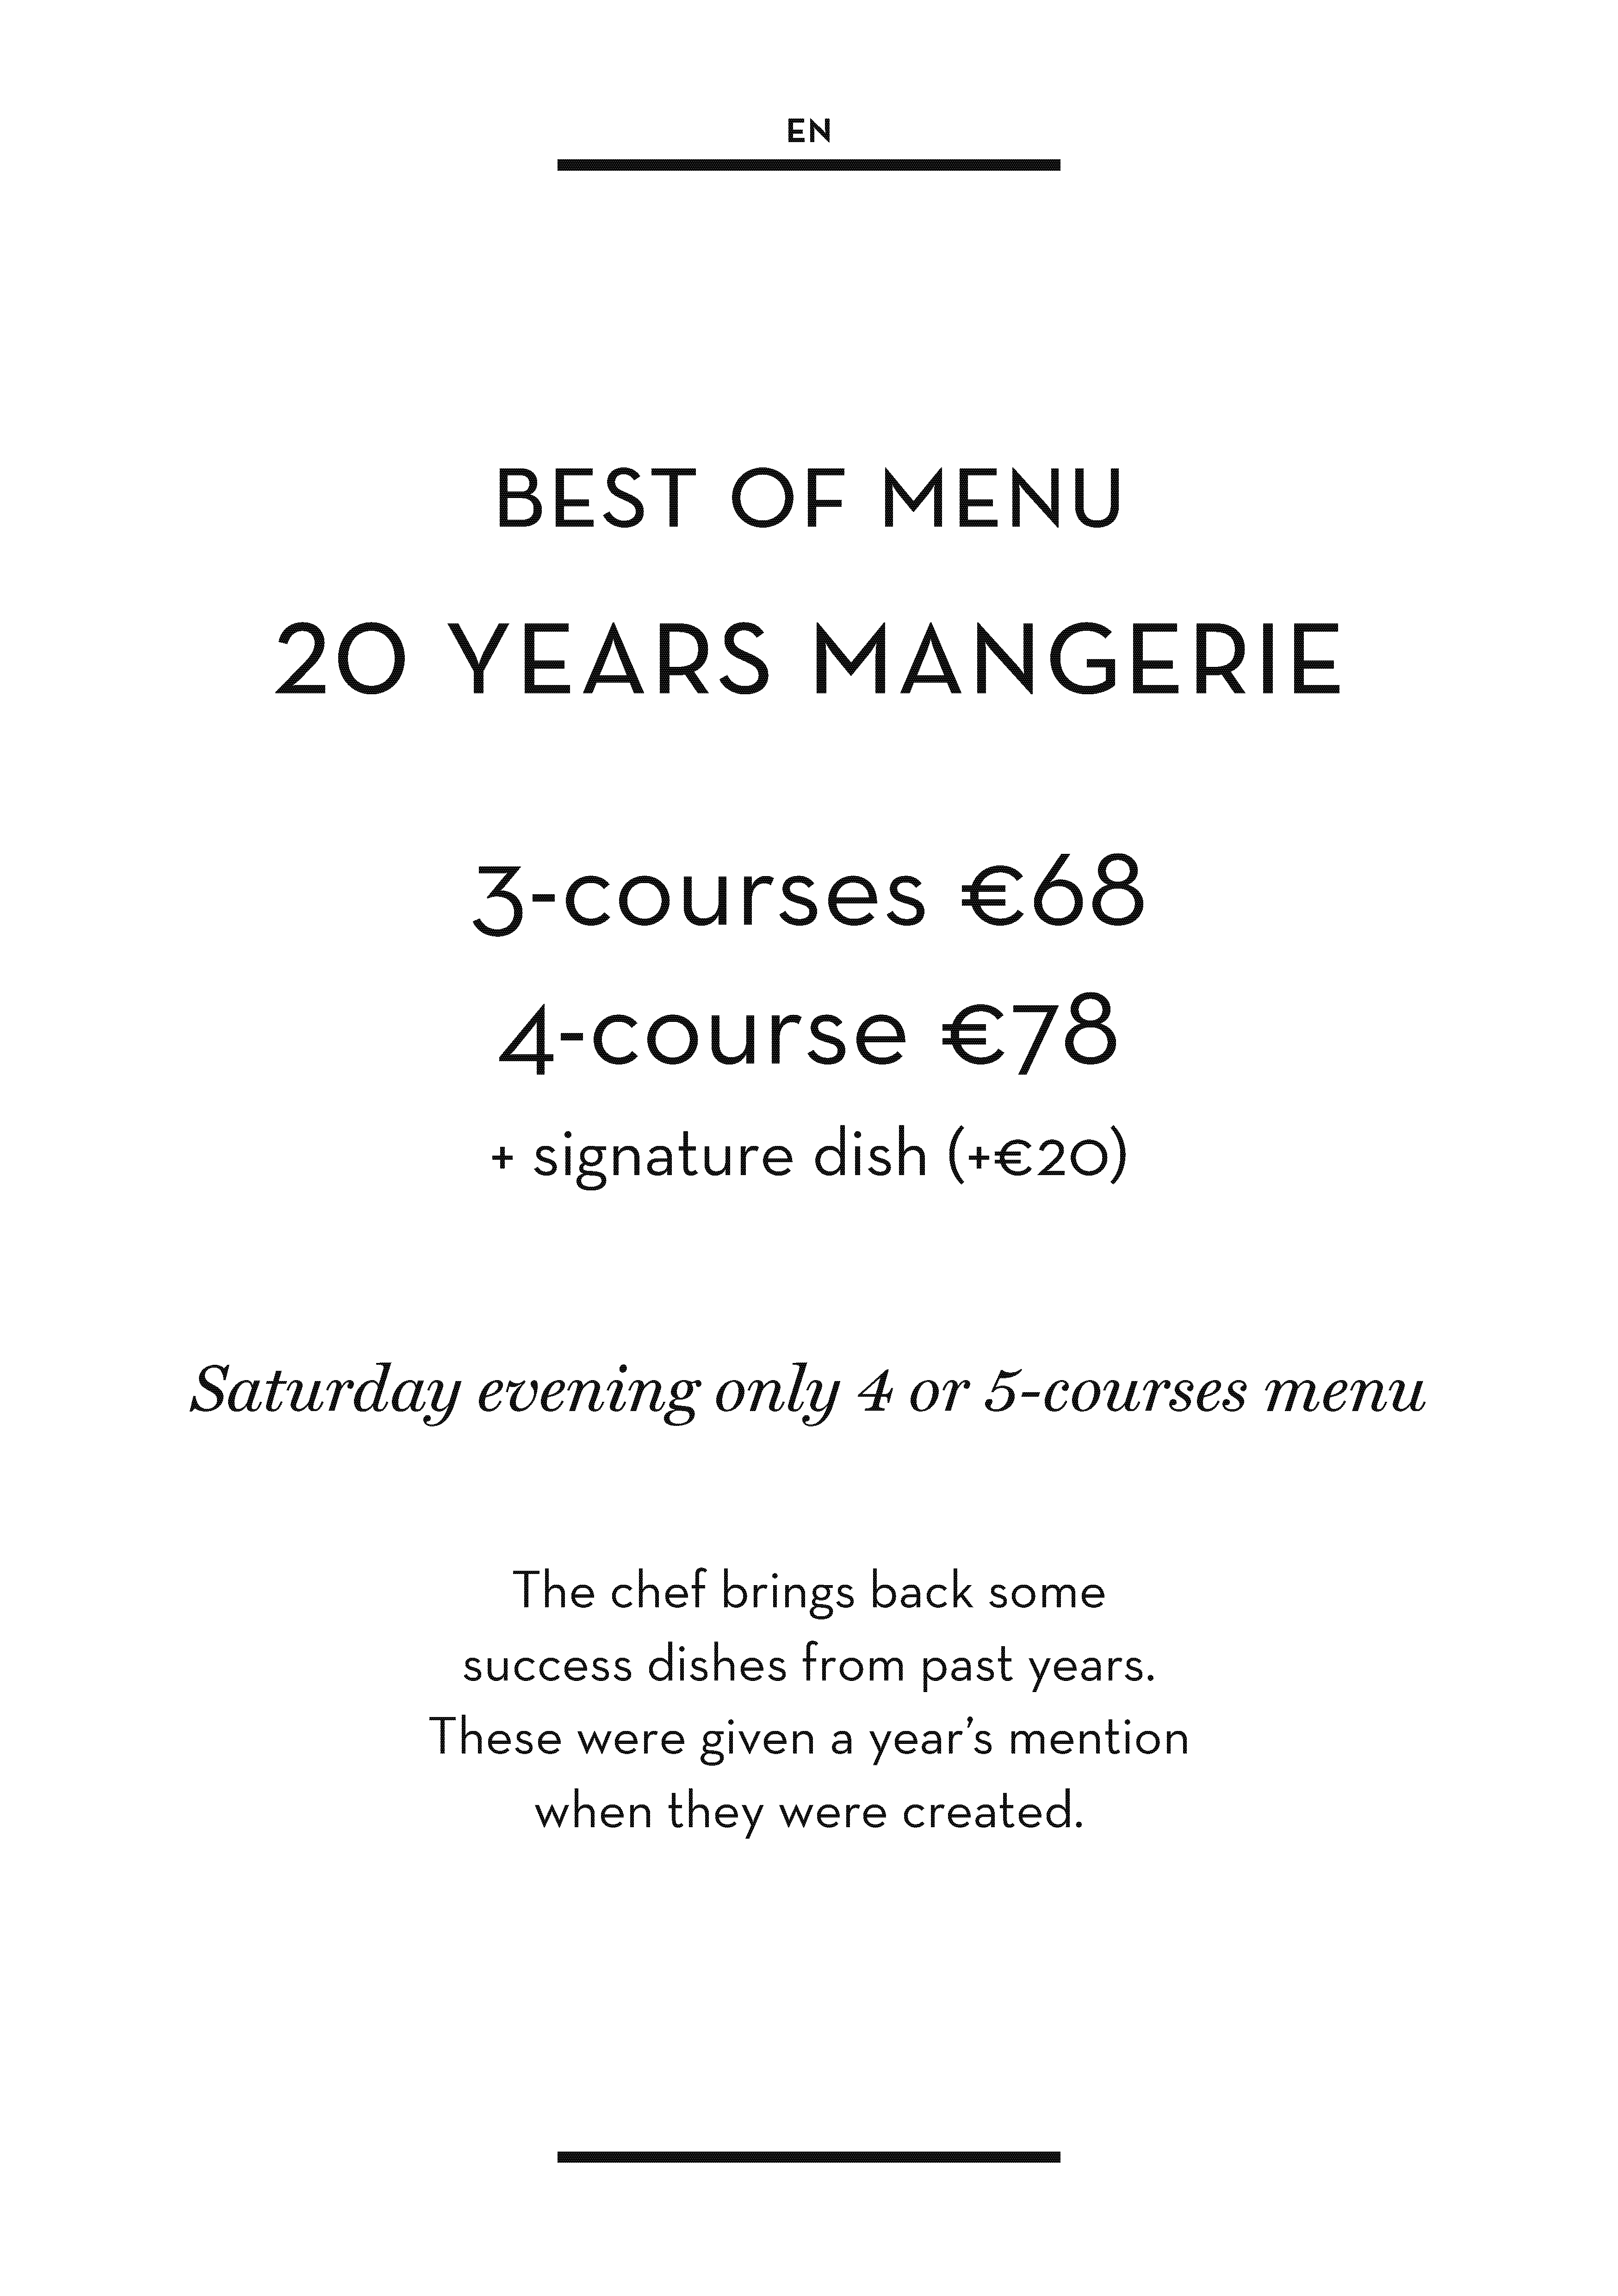 Best of menu